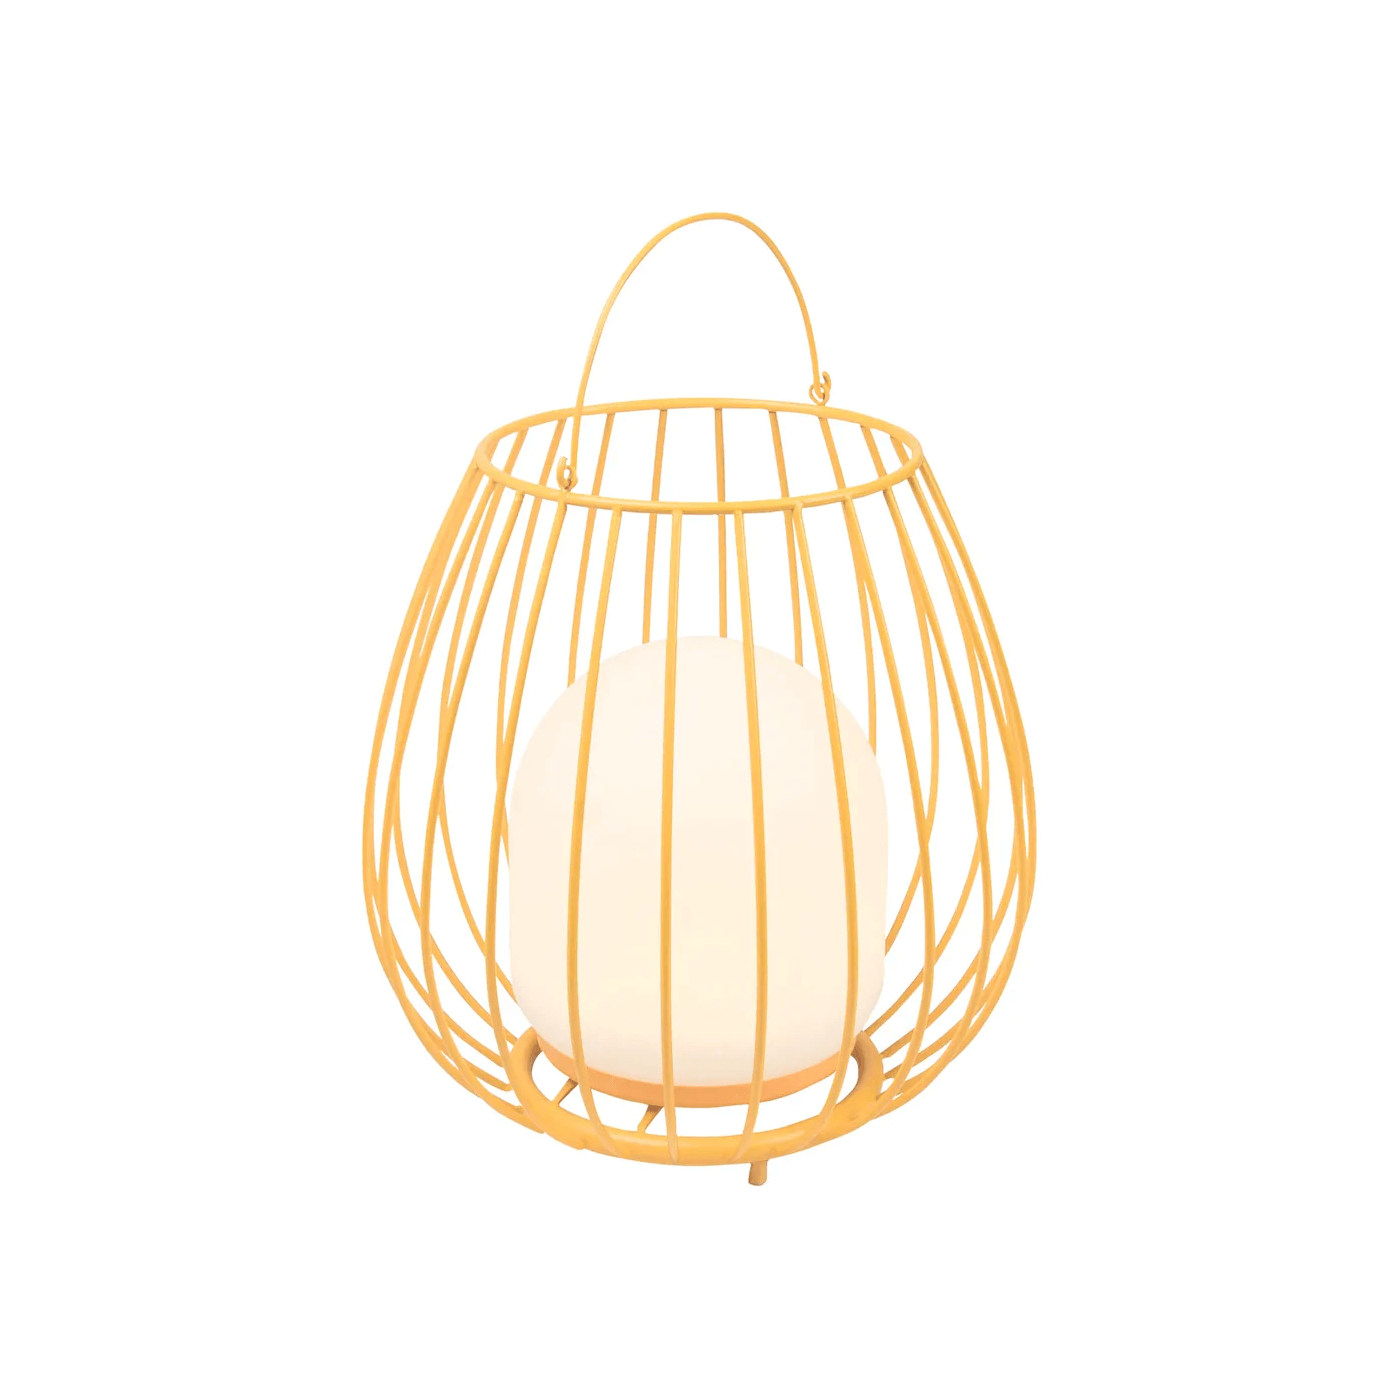 Lampa przenośna JIM TO-GO TO GO pomarańczowy Nordlux    Eye on Design